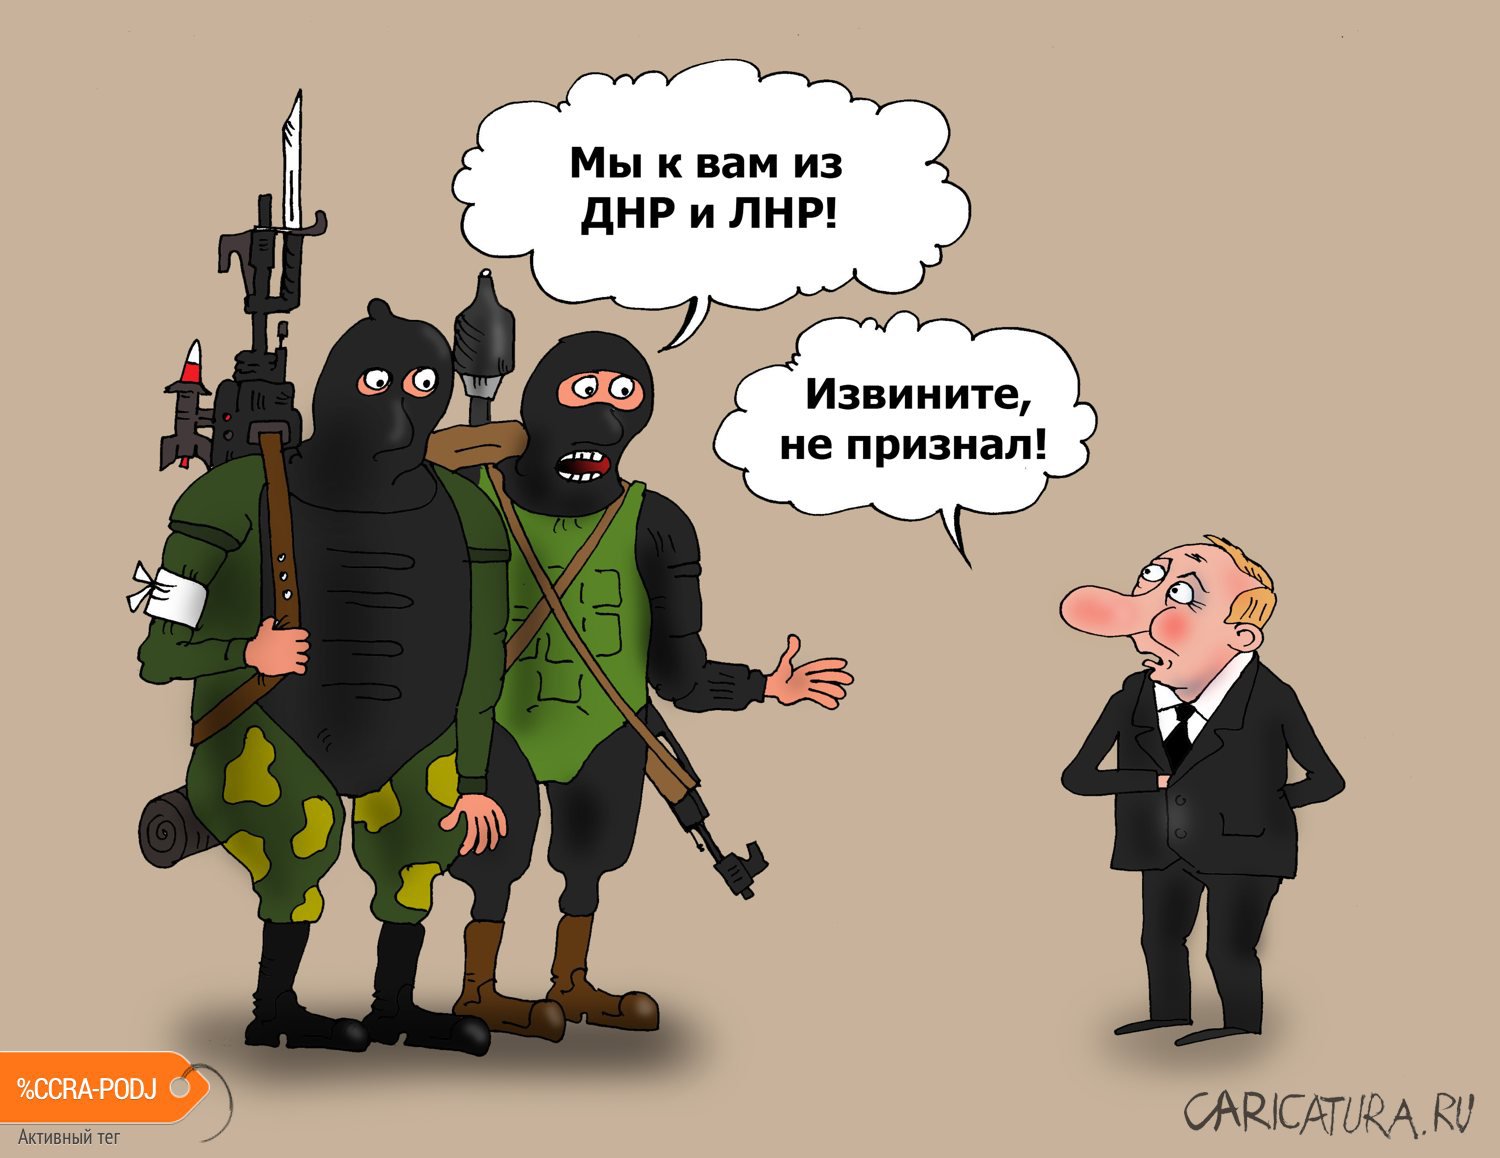 Карикатура "Ходоки у Путина", Валерий Тарасенко